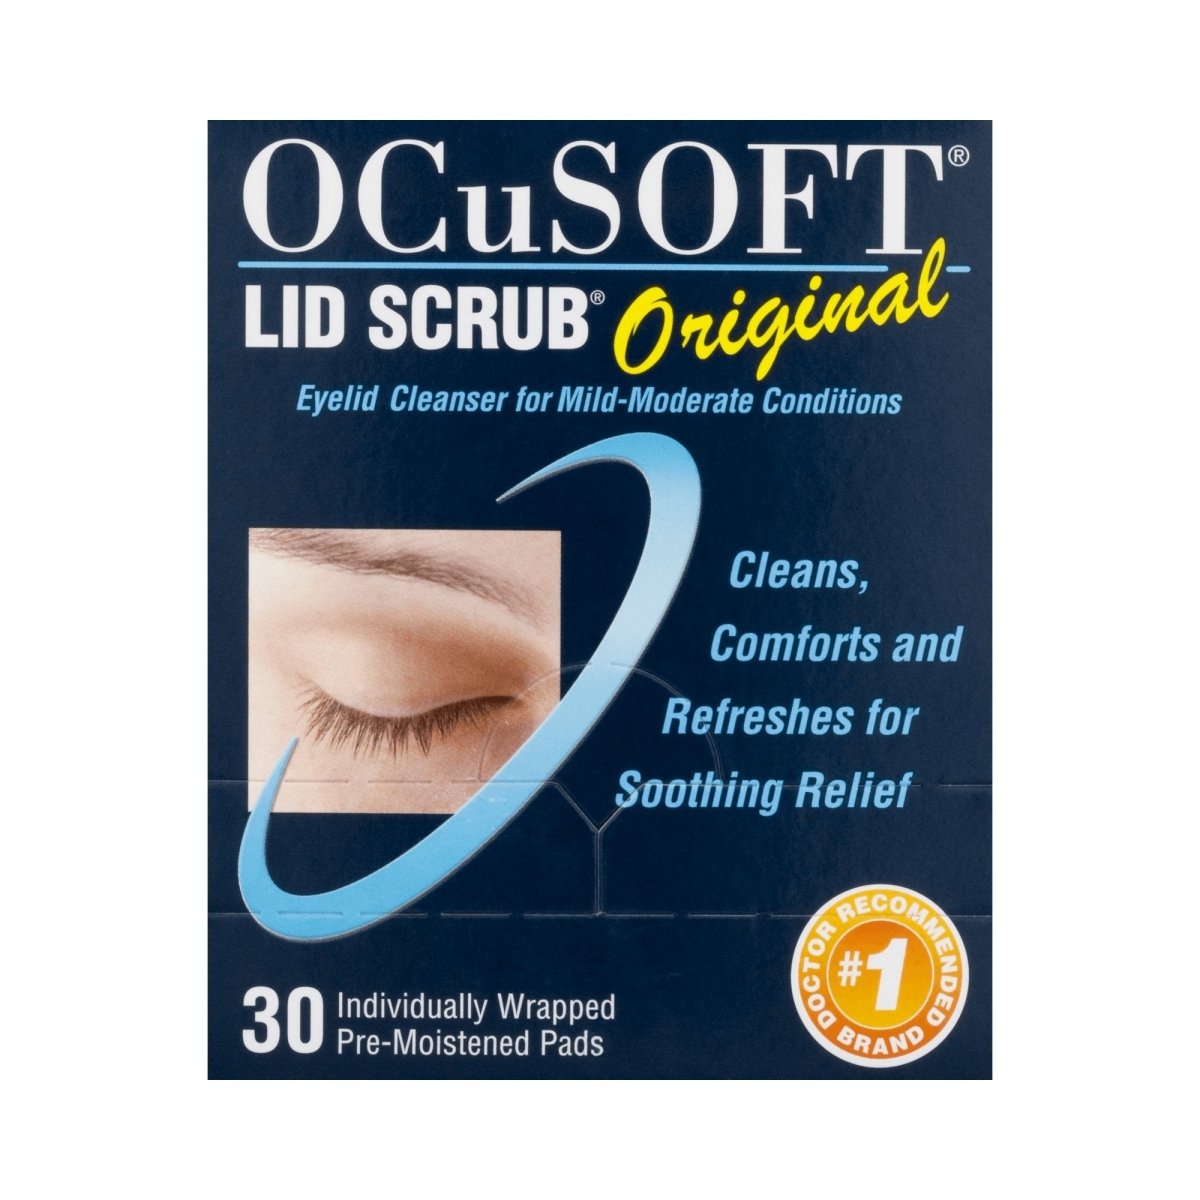 Ocusoft Lid Scrub Eyelid Cleanser - 493955_BX - 1